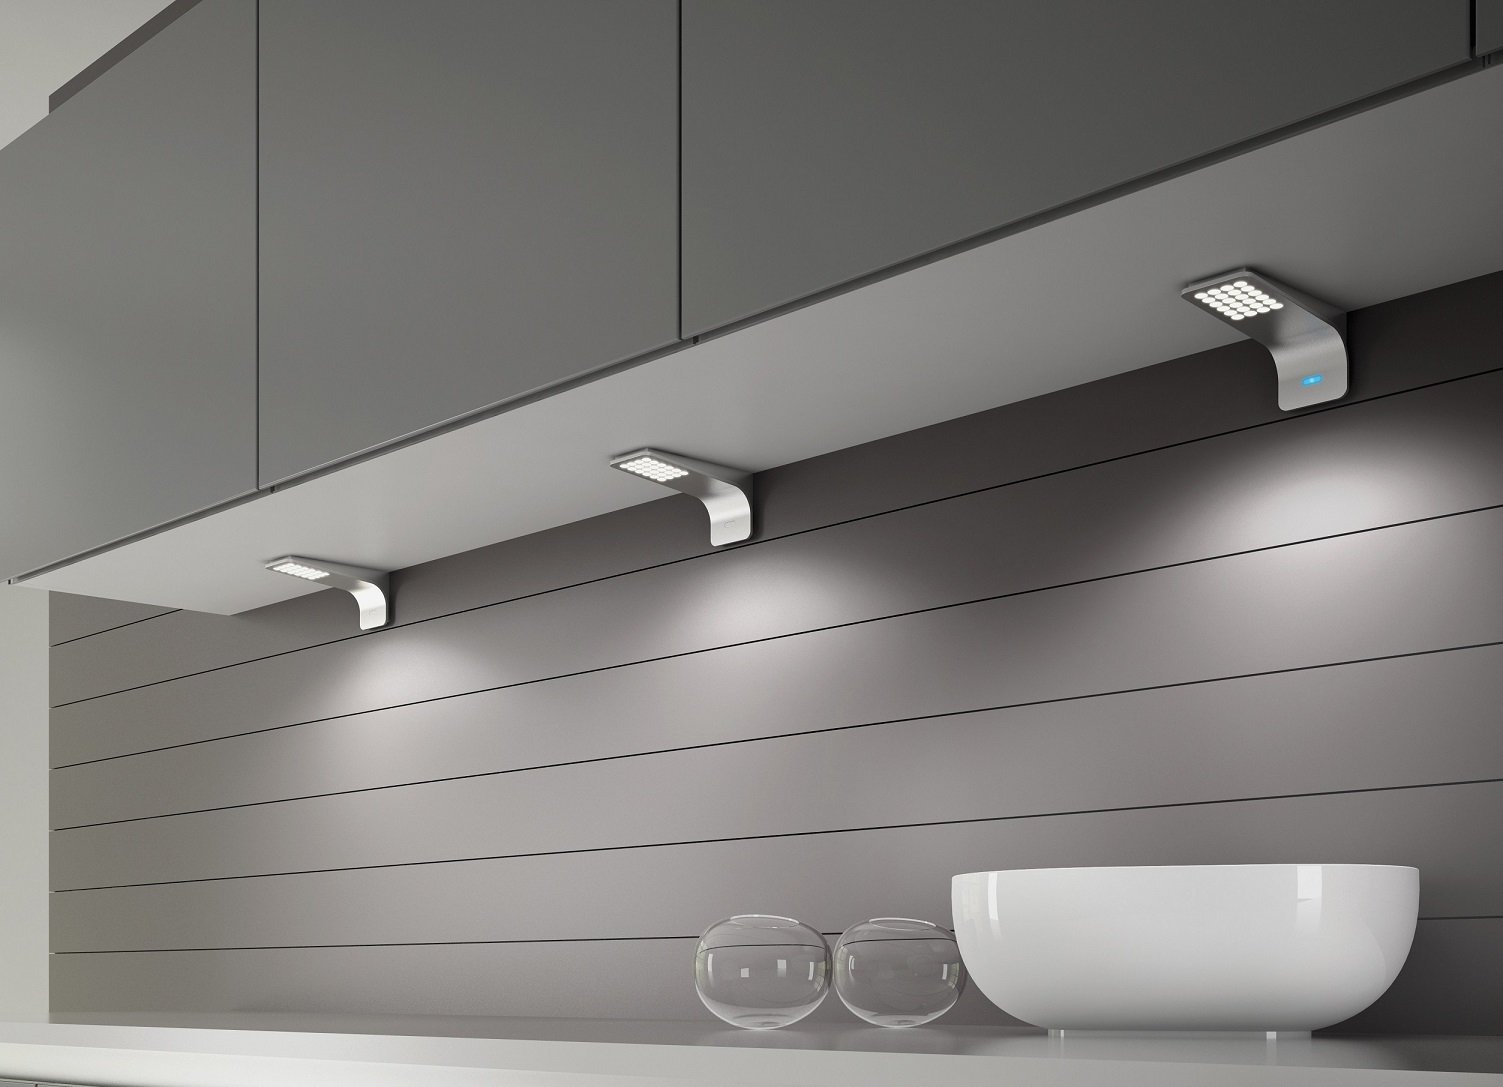 подсветка для кухни под шкафы светодиодная беспроводная